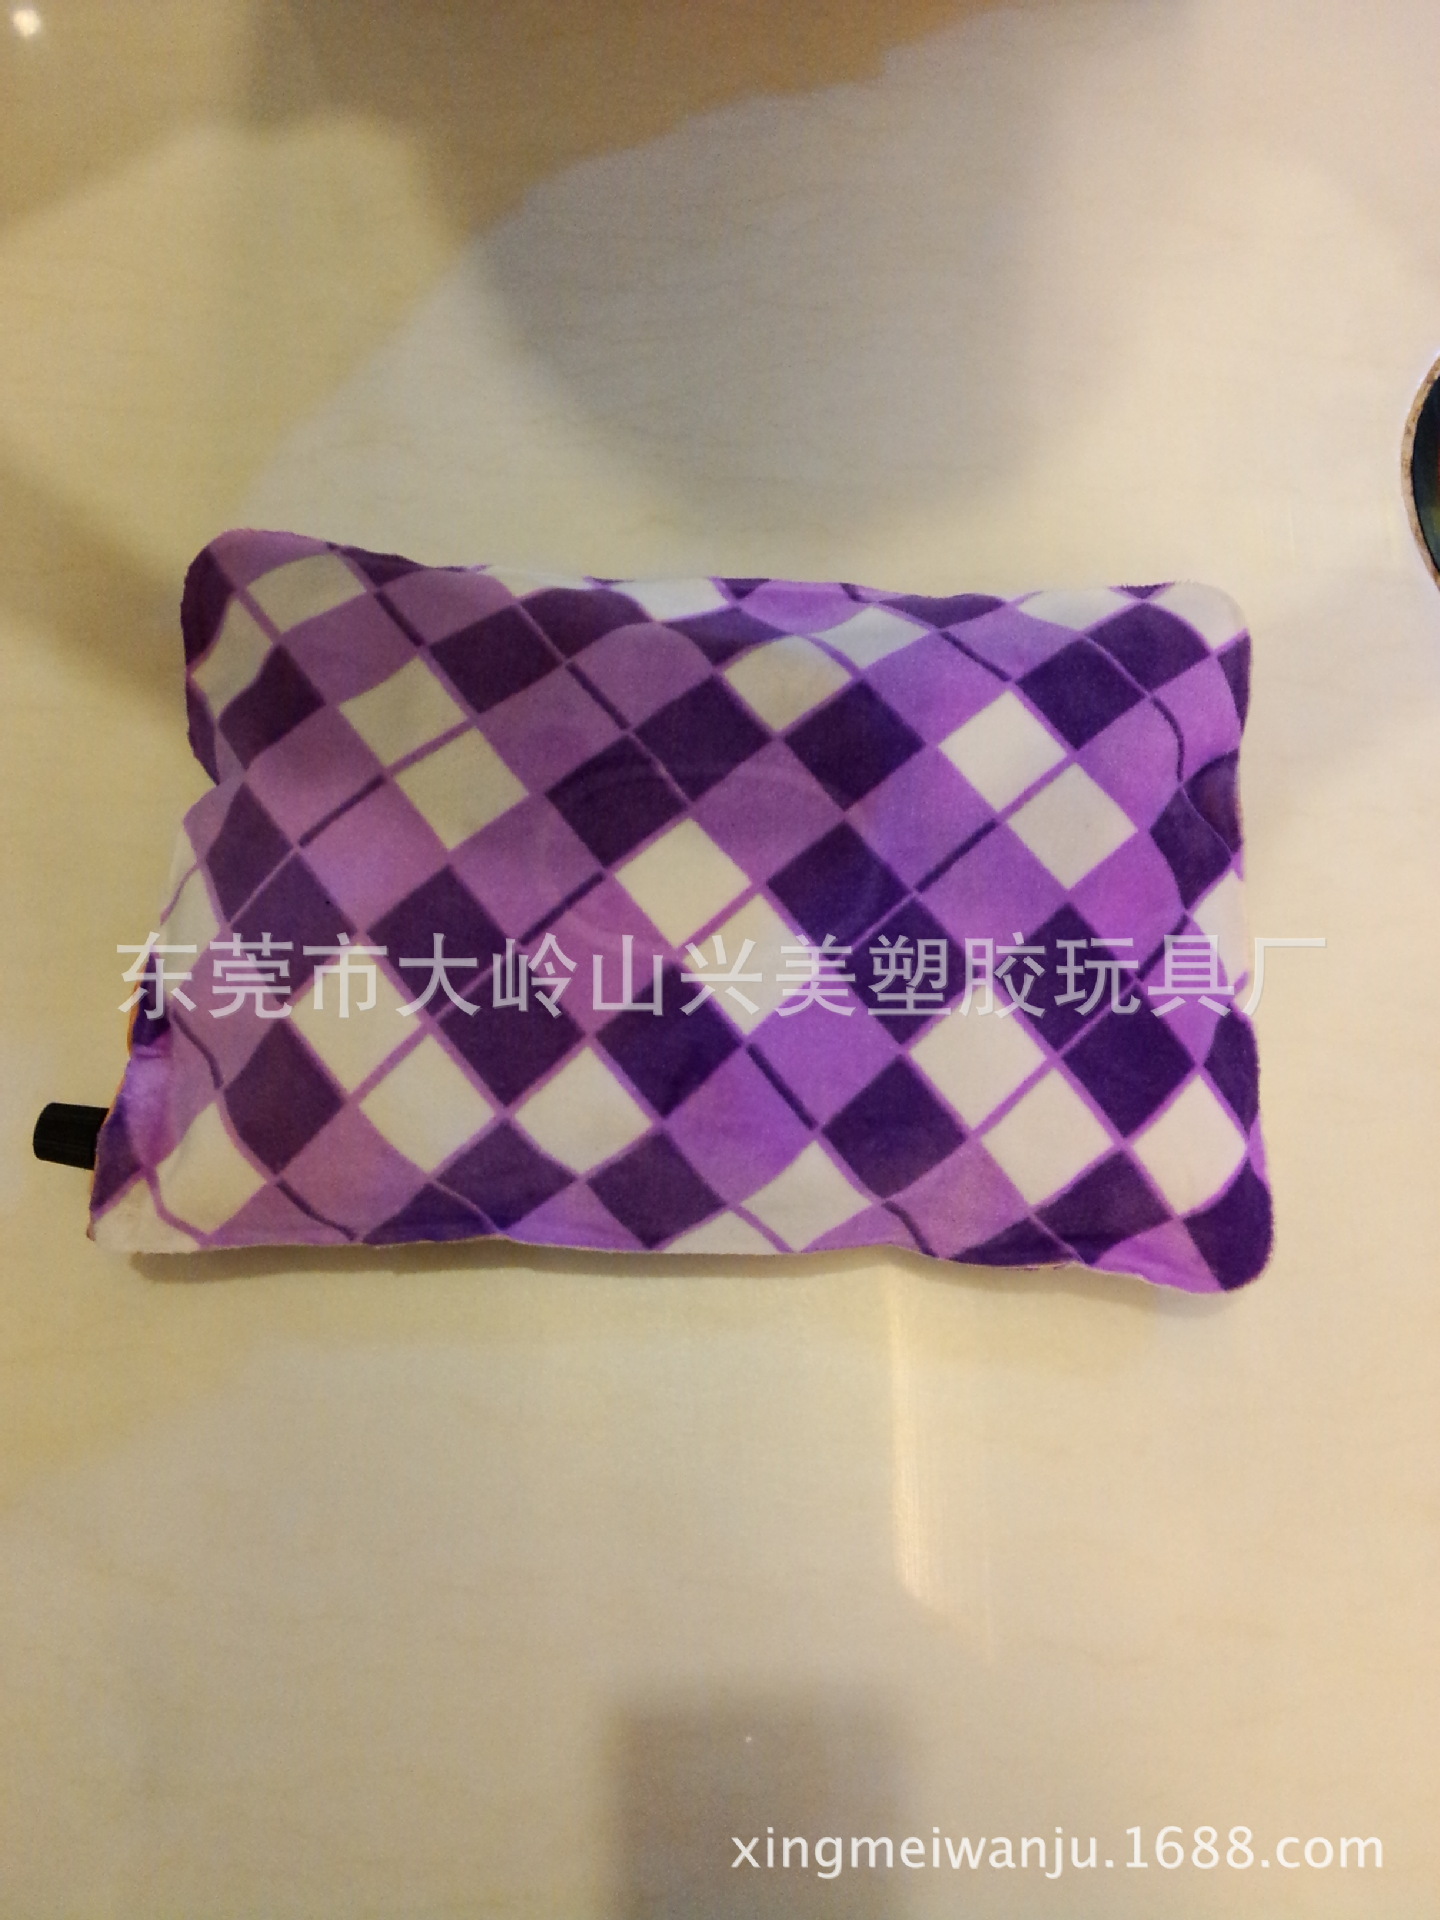 厂家直销自动充气枕 可订制保健自动充气枕 绒布材料自动充气枕1